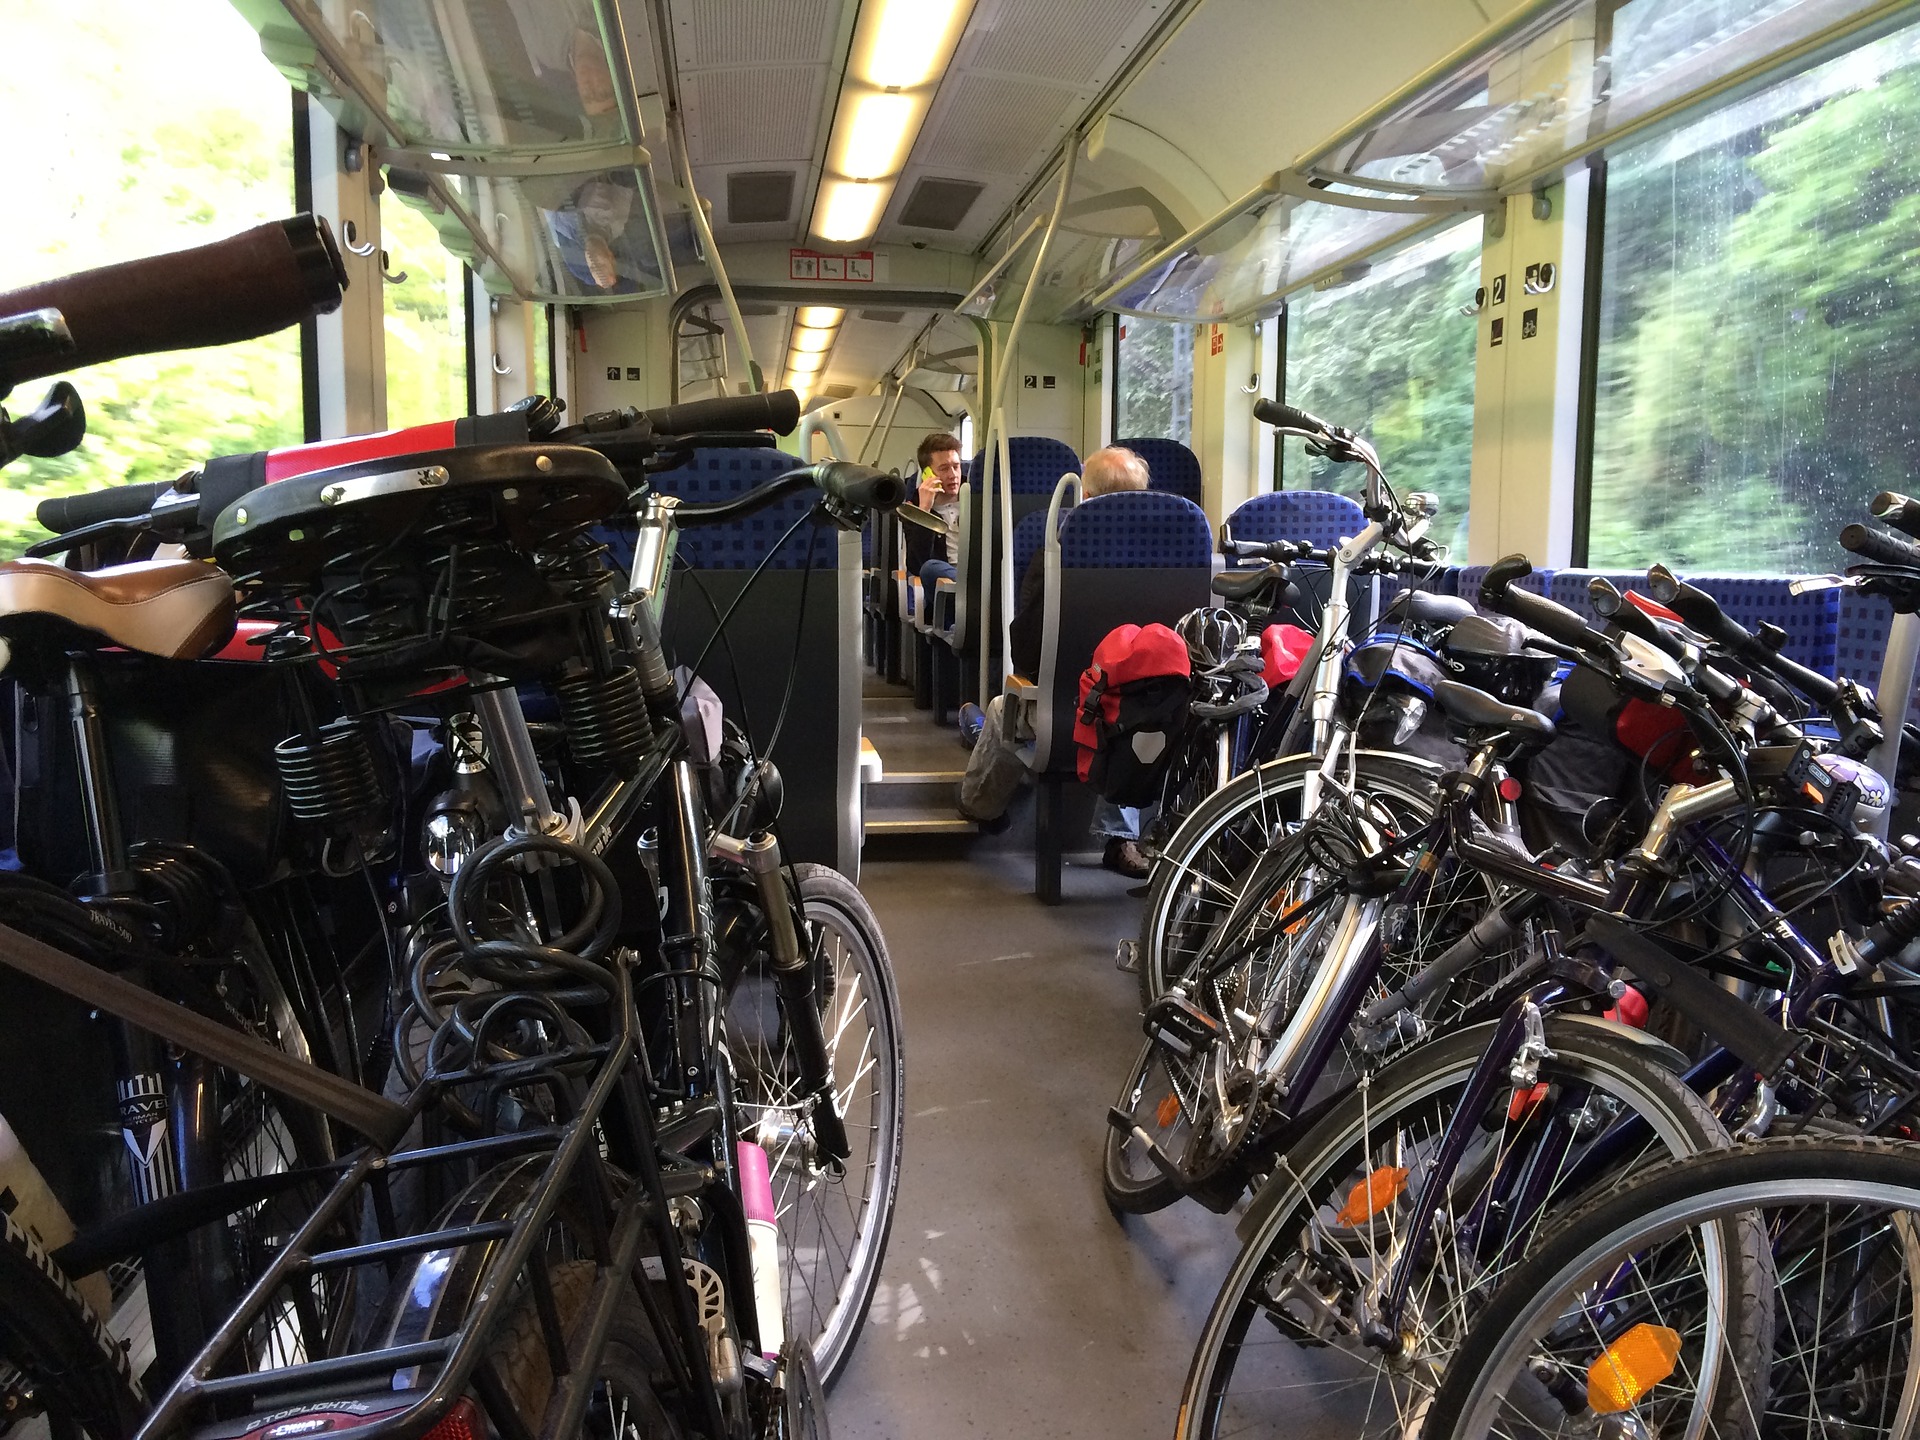 Un train régional type TER accueillant de nombreux vélos non démontés (photo de pfeiffed - domaine public)